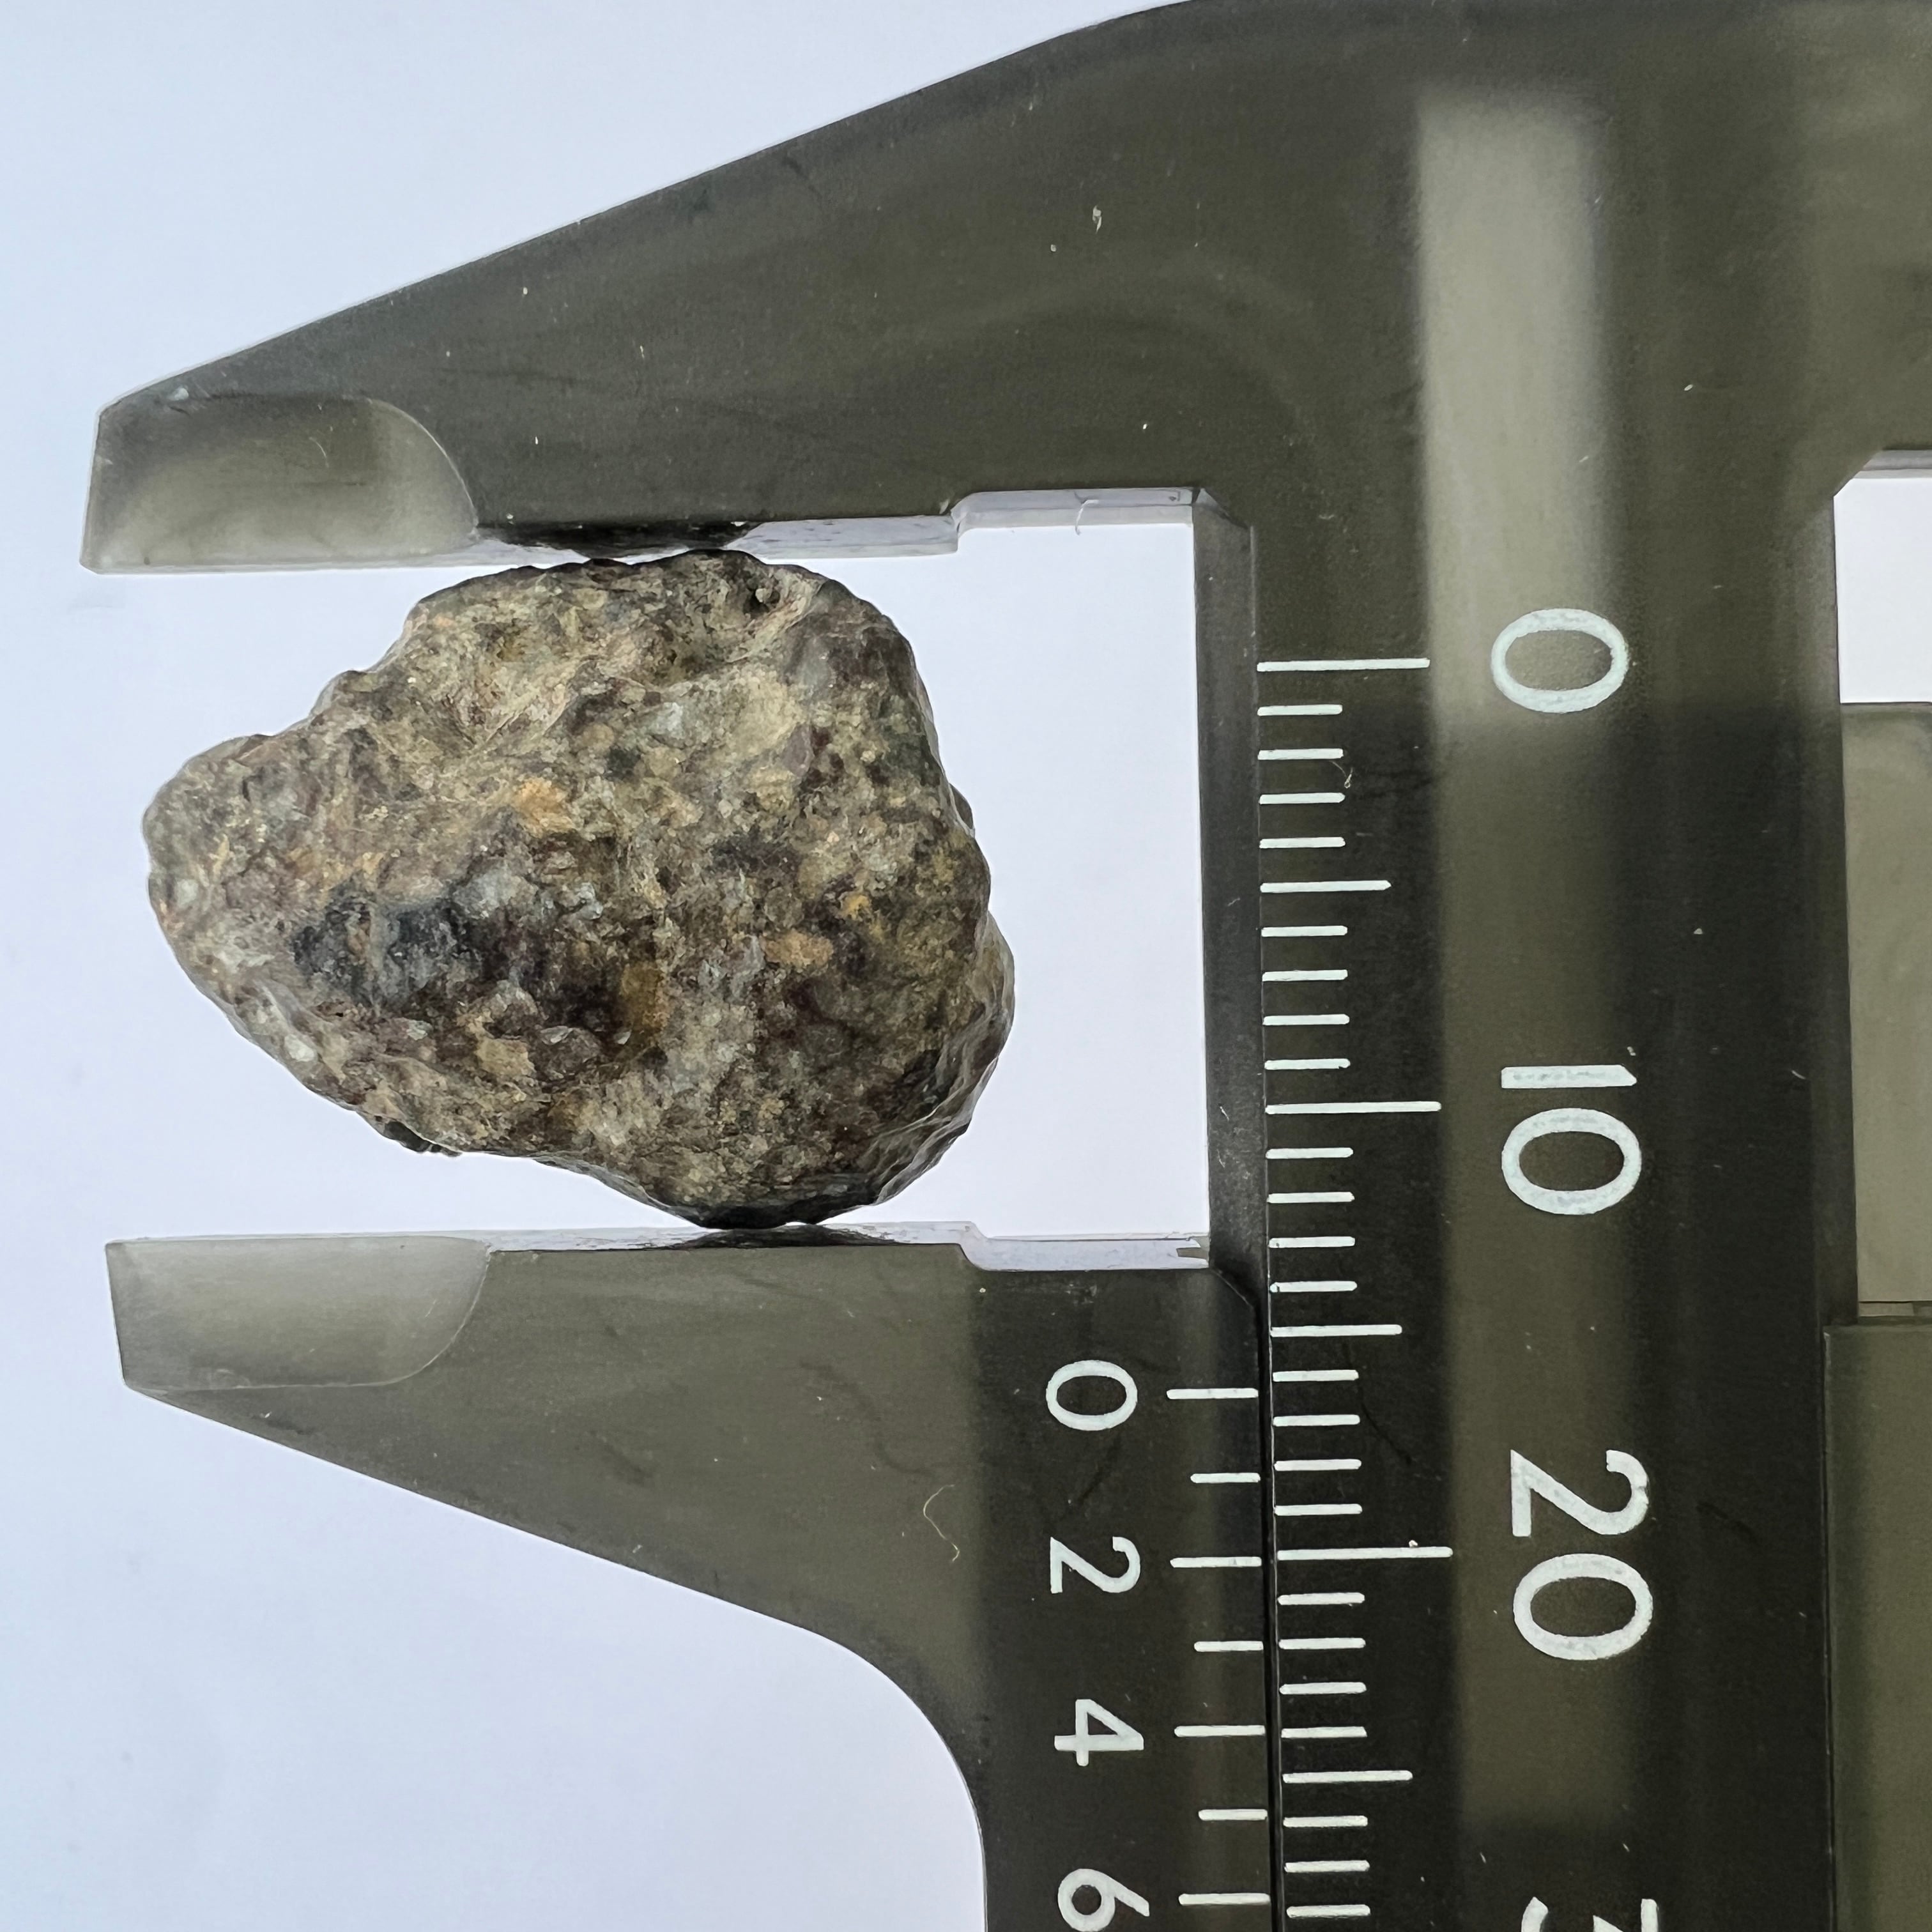 E22192】 石質隕石 普通コンドライト 隕石 Condrite NWA869 メテオライト 天然石 パワーストーン クリスタル・ワールド御徒町店